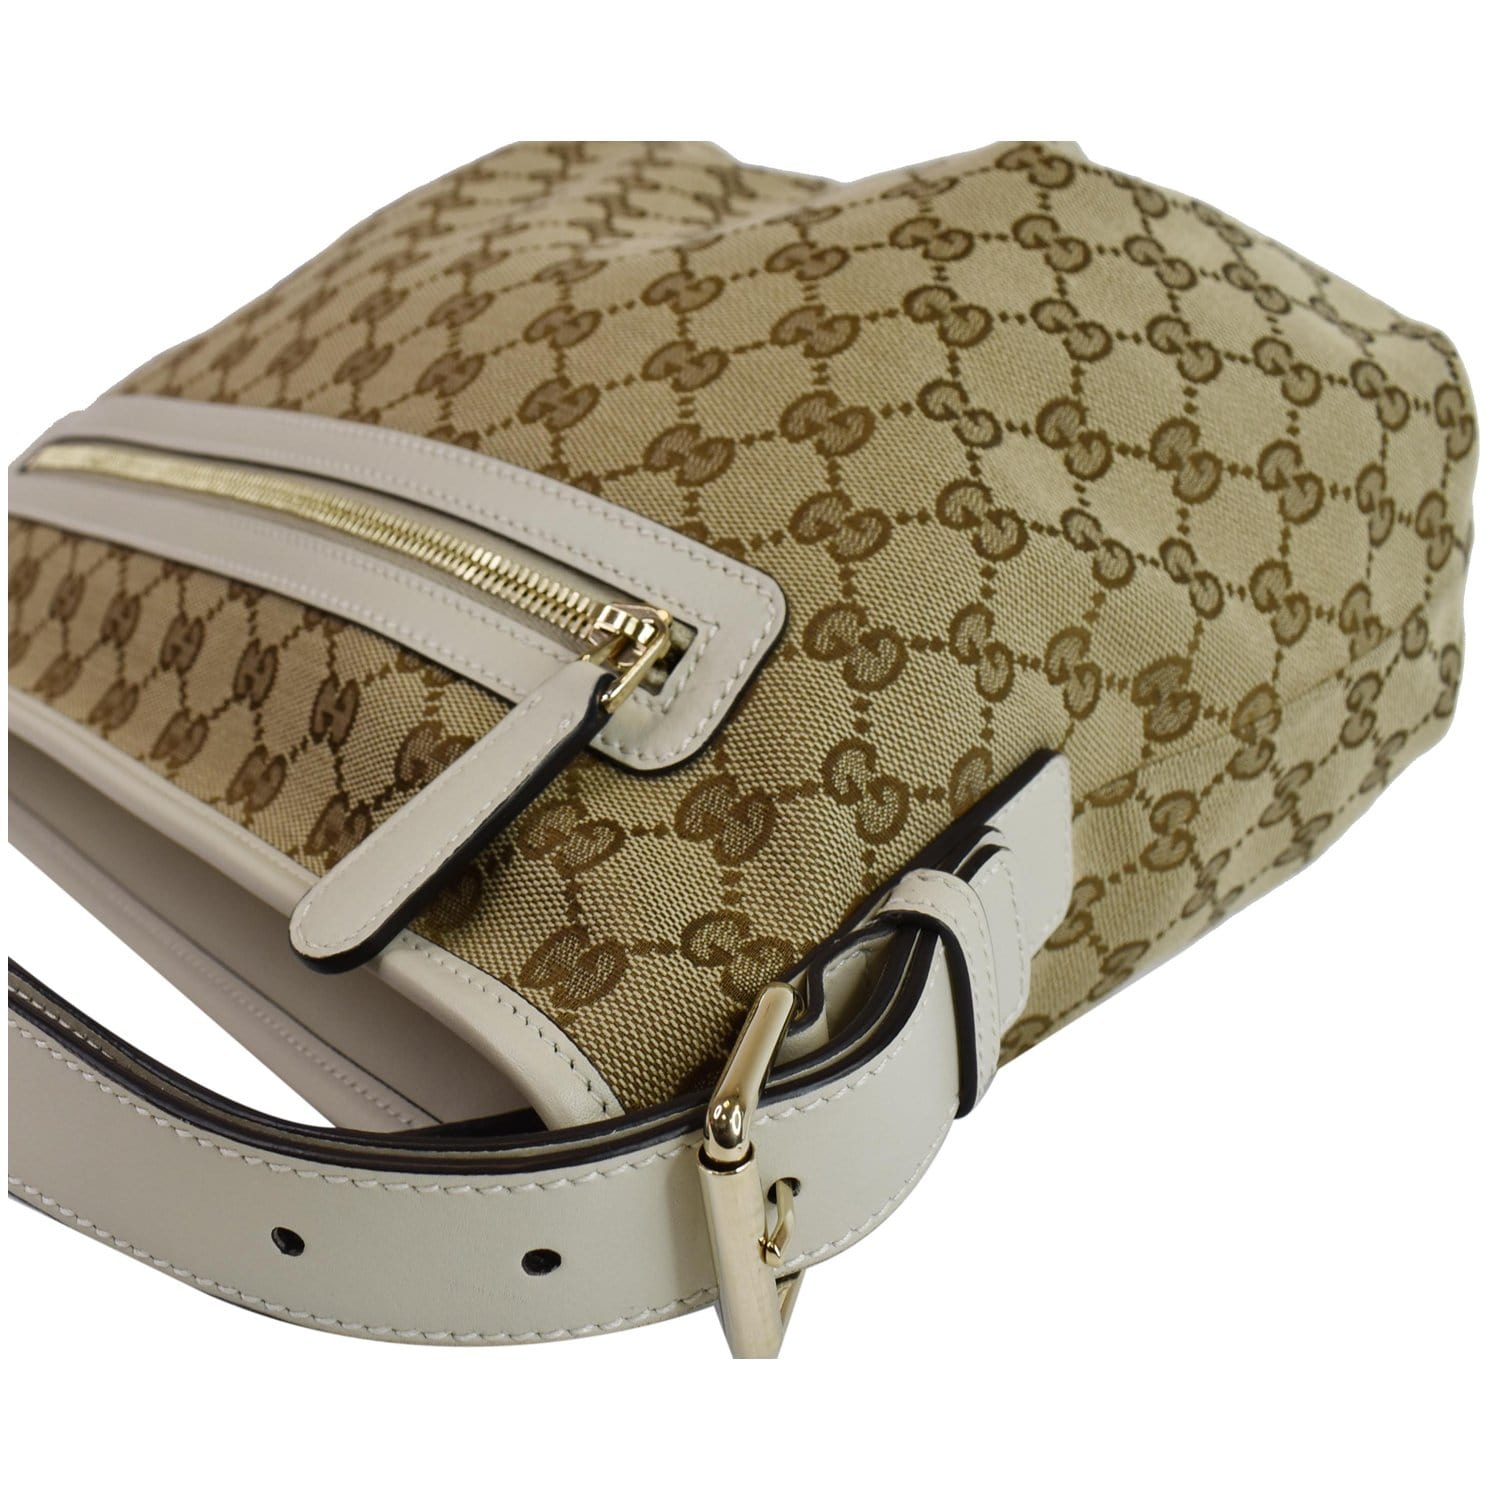 Gucci Sling Shoulder Bags